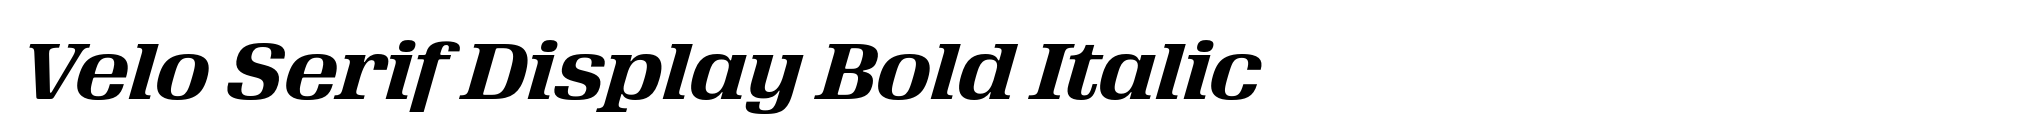 Velo Serif Display Bold Italic image